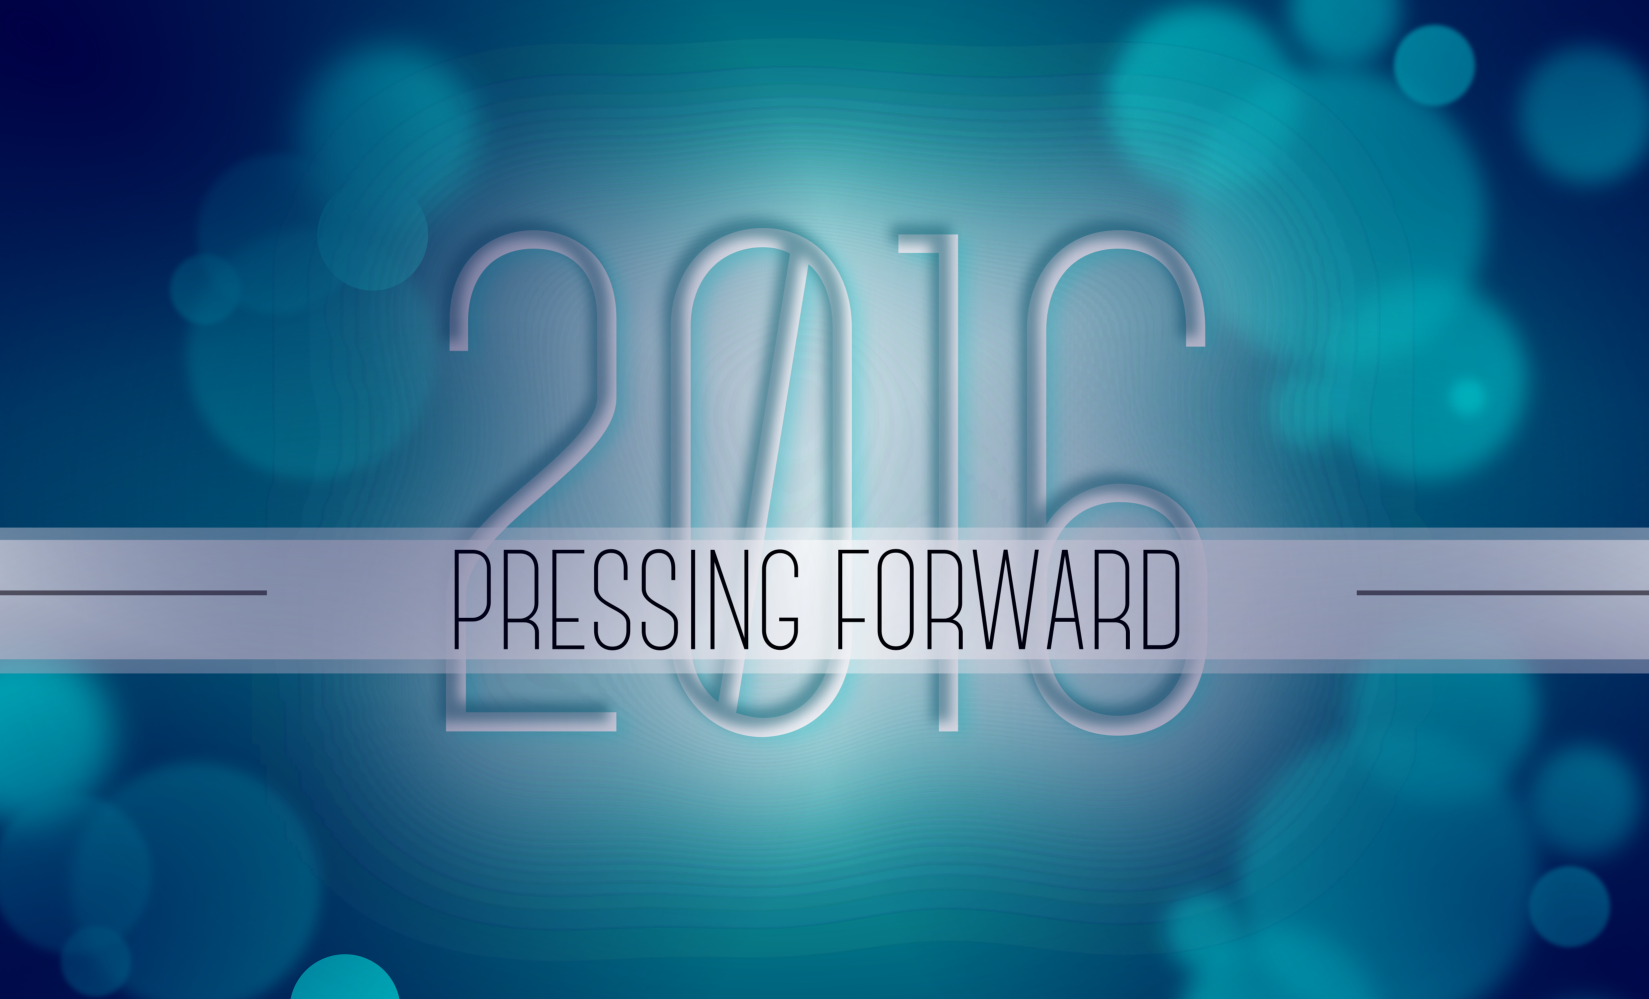 Pressing Forward - January 3, 2016 AM